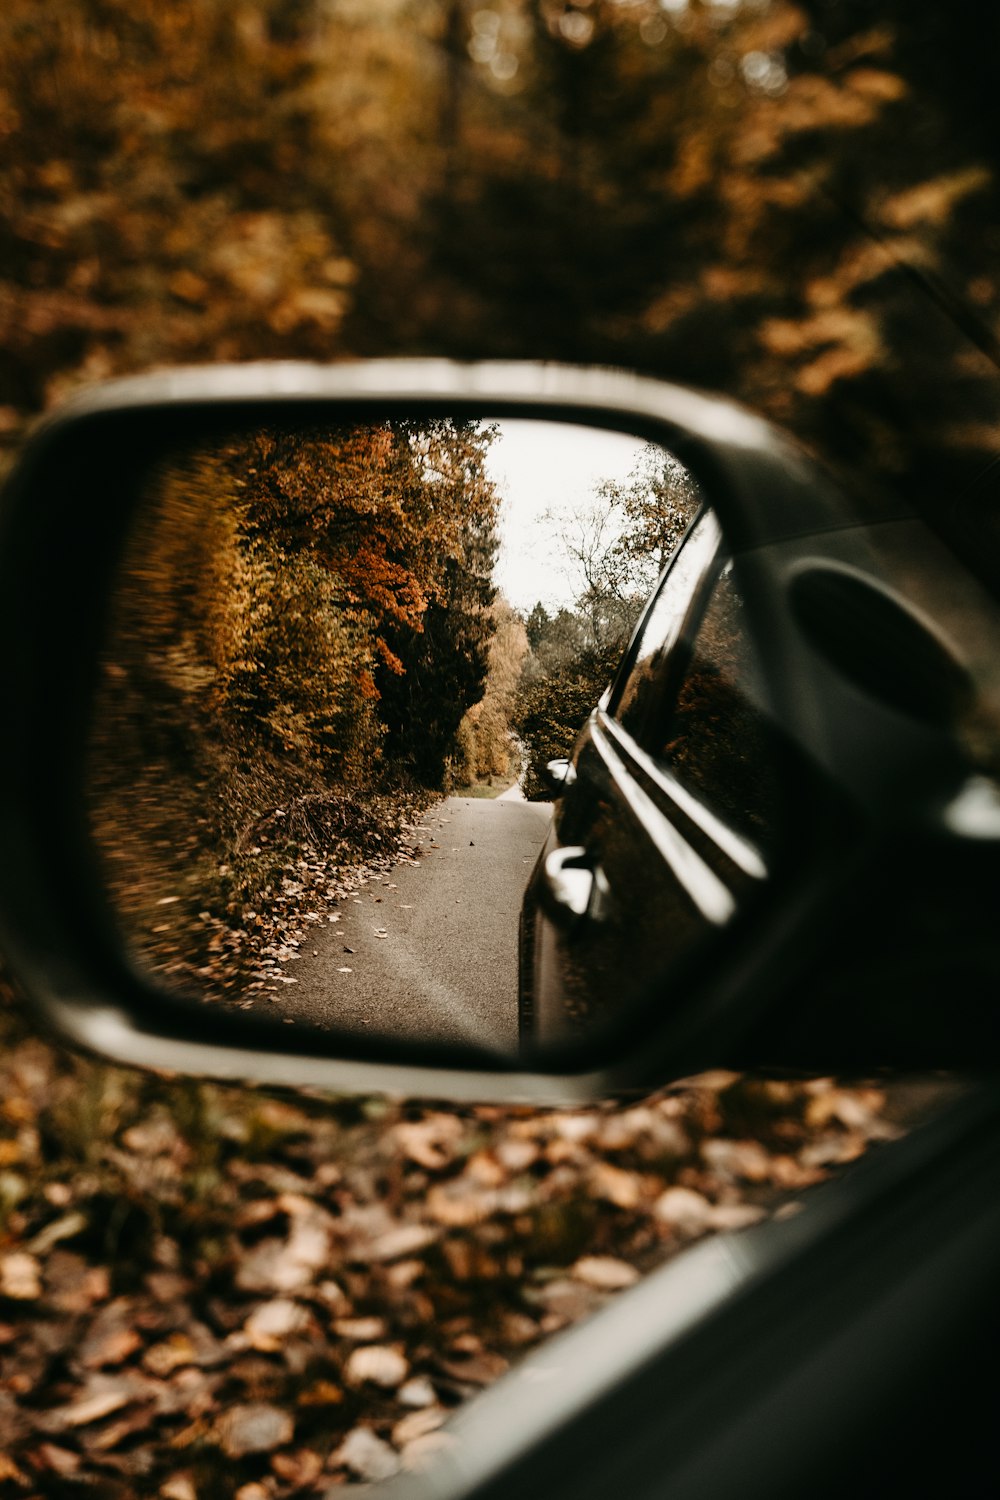 specchietto retrovisore nero dell'auto che riflette gli alberi verdi durante il giorno